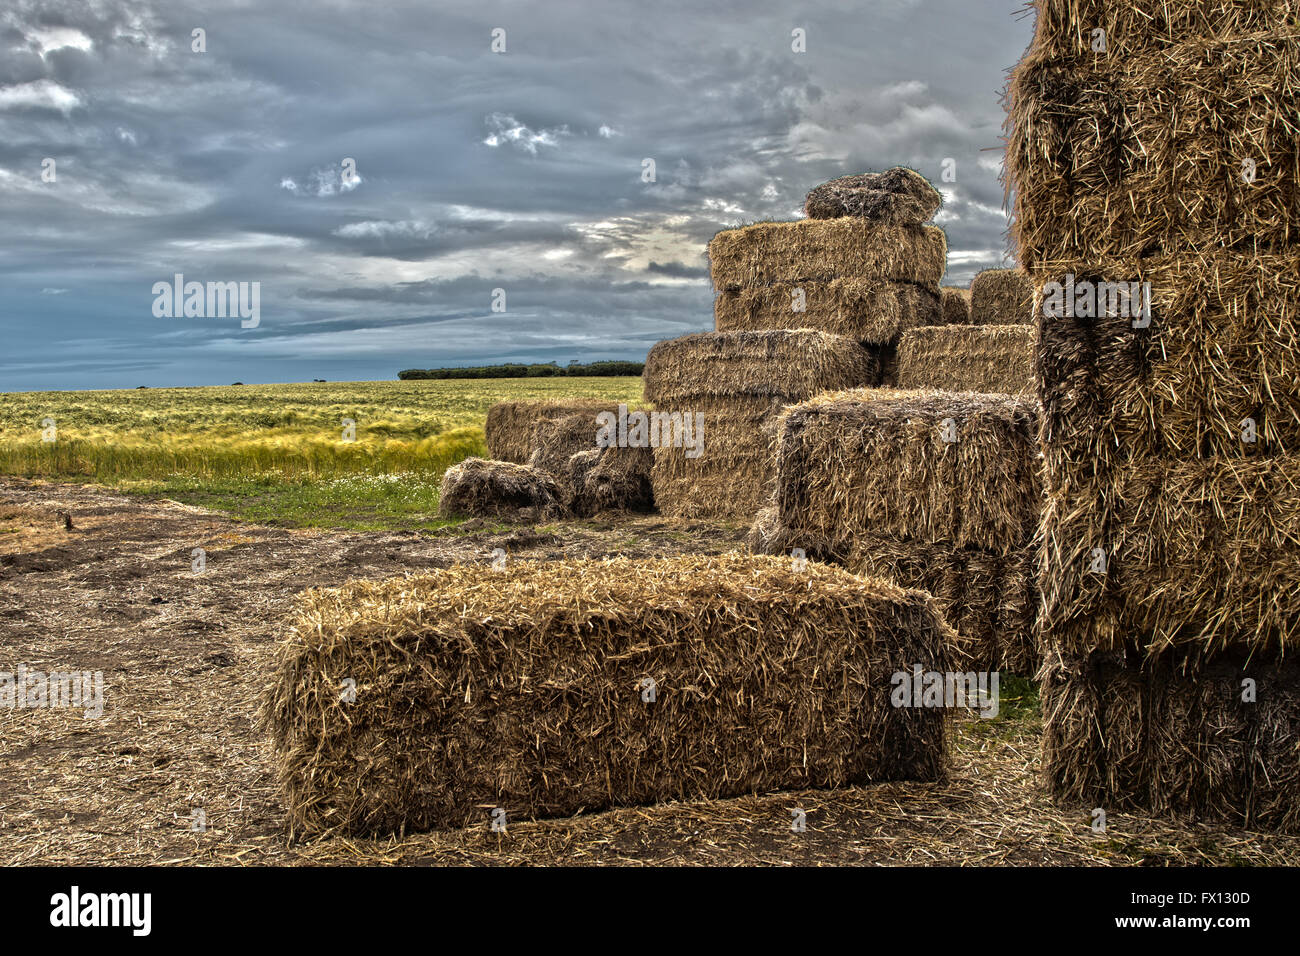 Immagine artistica di balle di paglia su terreni agricoli Foto Stock